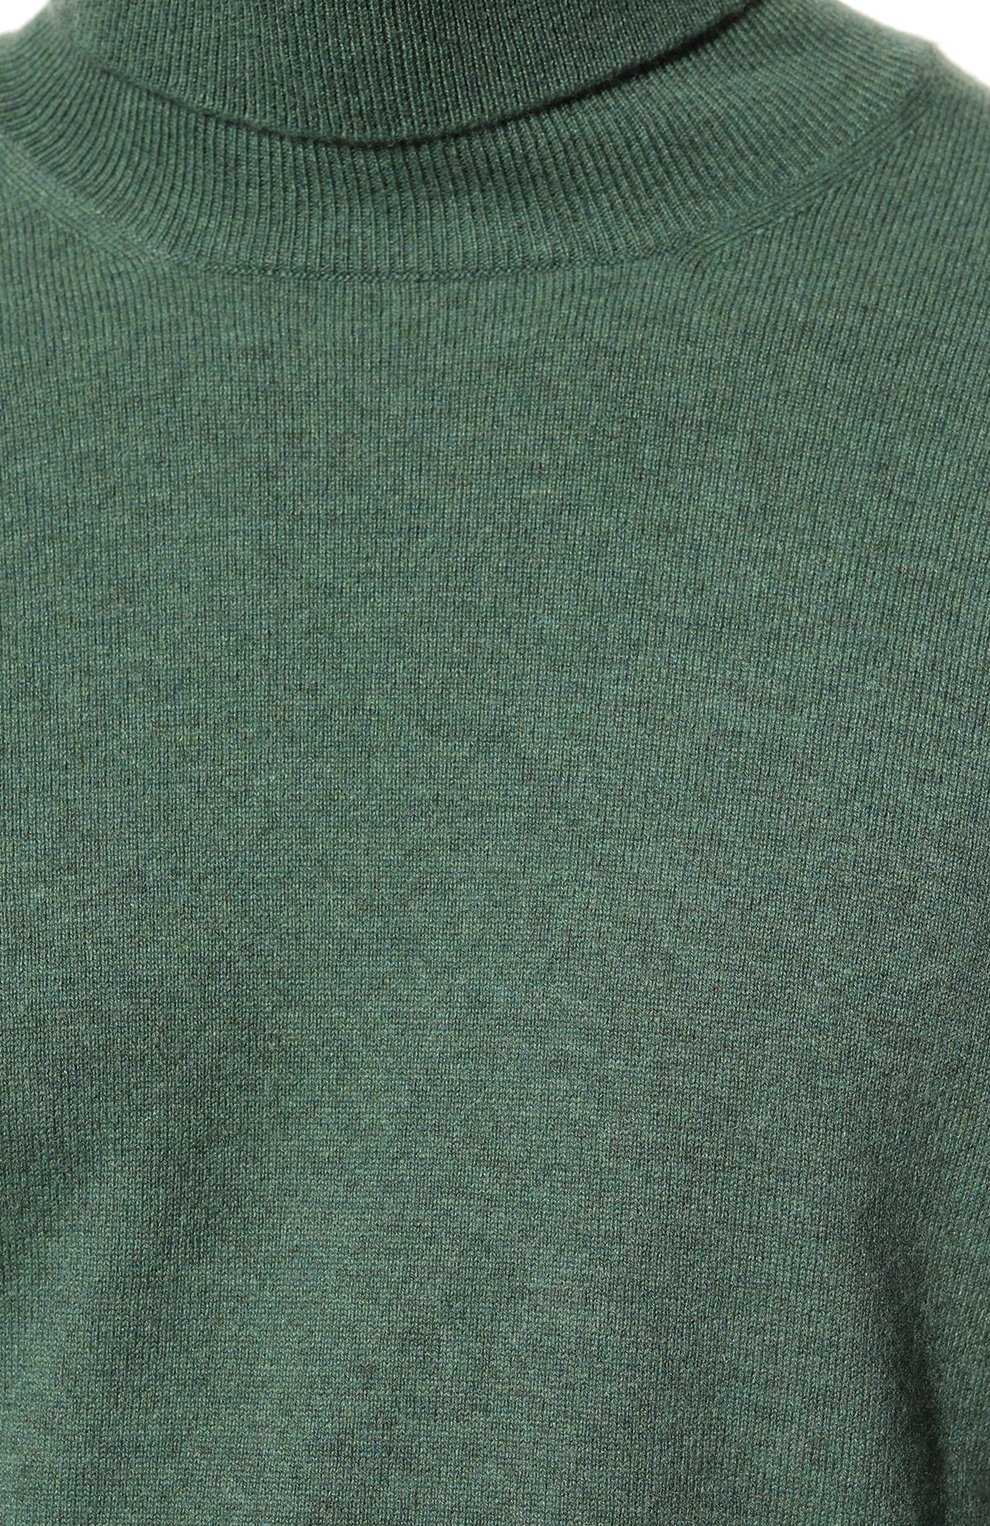 Мужской кашемировая водолазка GRAN SASSO зеленого цвета, арт. 55157/15590 | Фото 5 (Материал внешний: Шерсть, Кашемир; Рукава: Длинные; Принт: Без принта; Длина (для топов): Стандартные; Мужское Кросс-КТ: Водолазка-одежда; Стили: Кэжуэл)